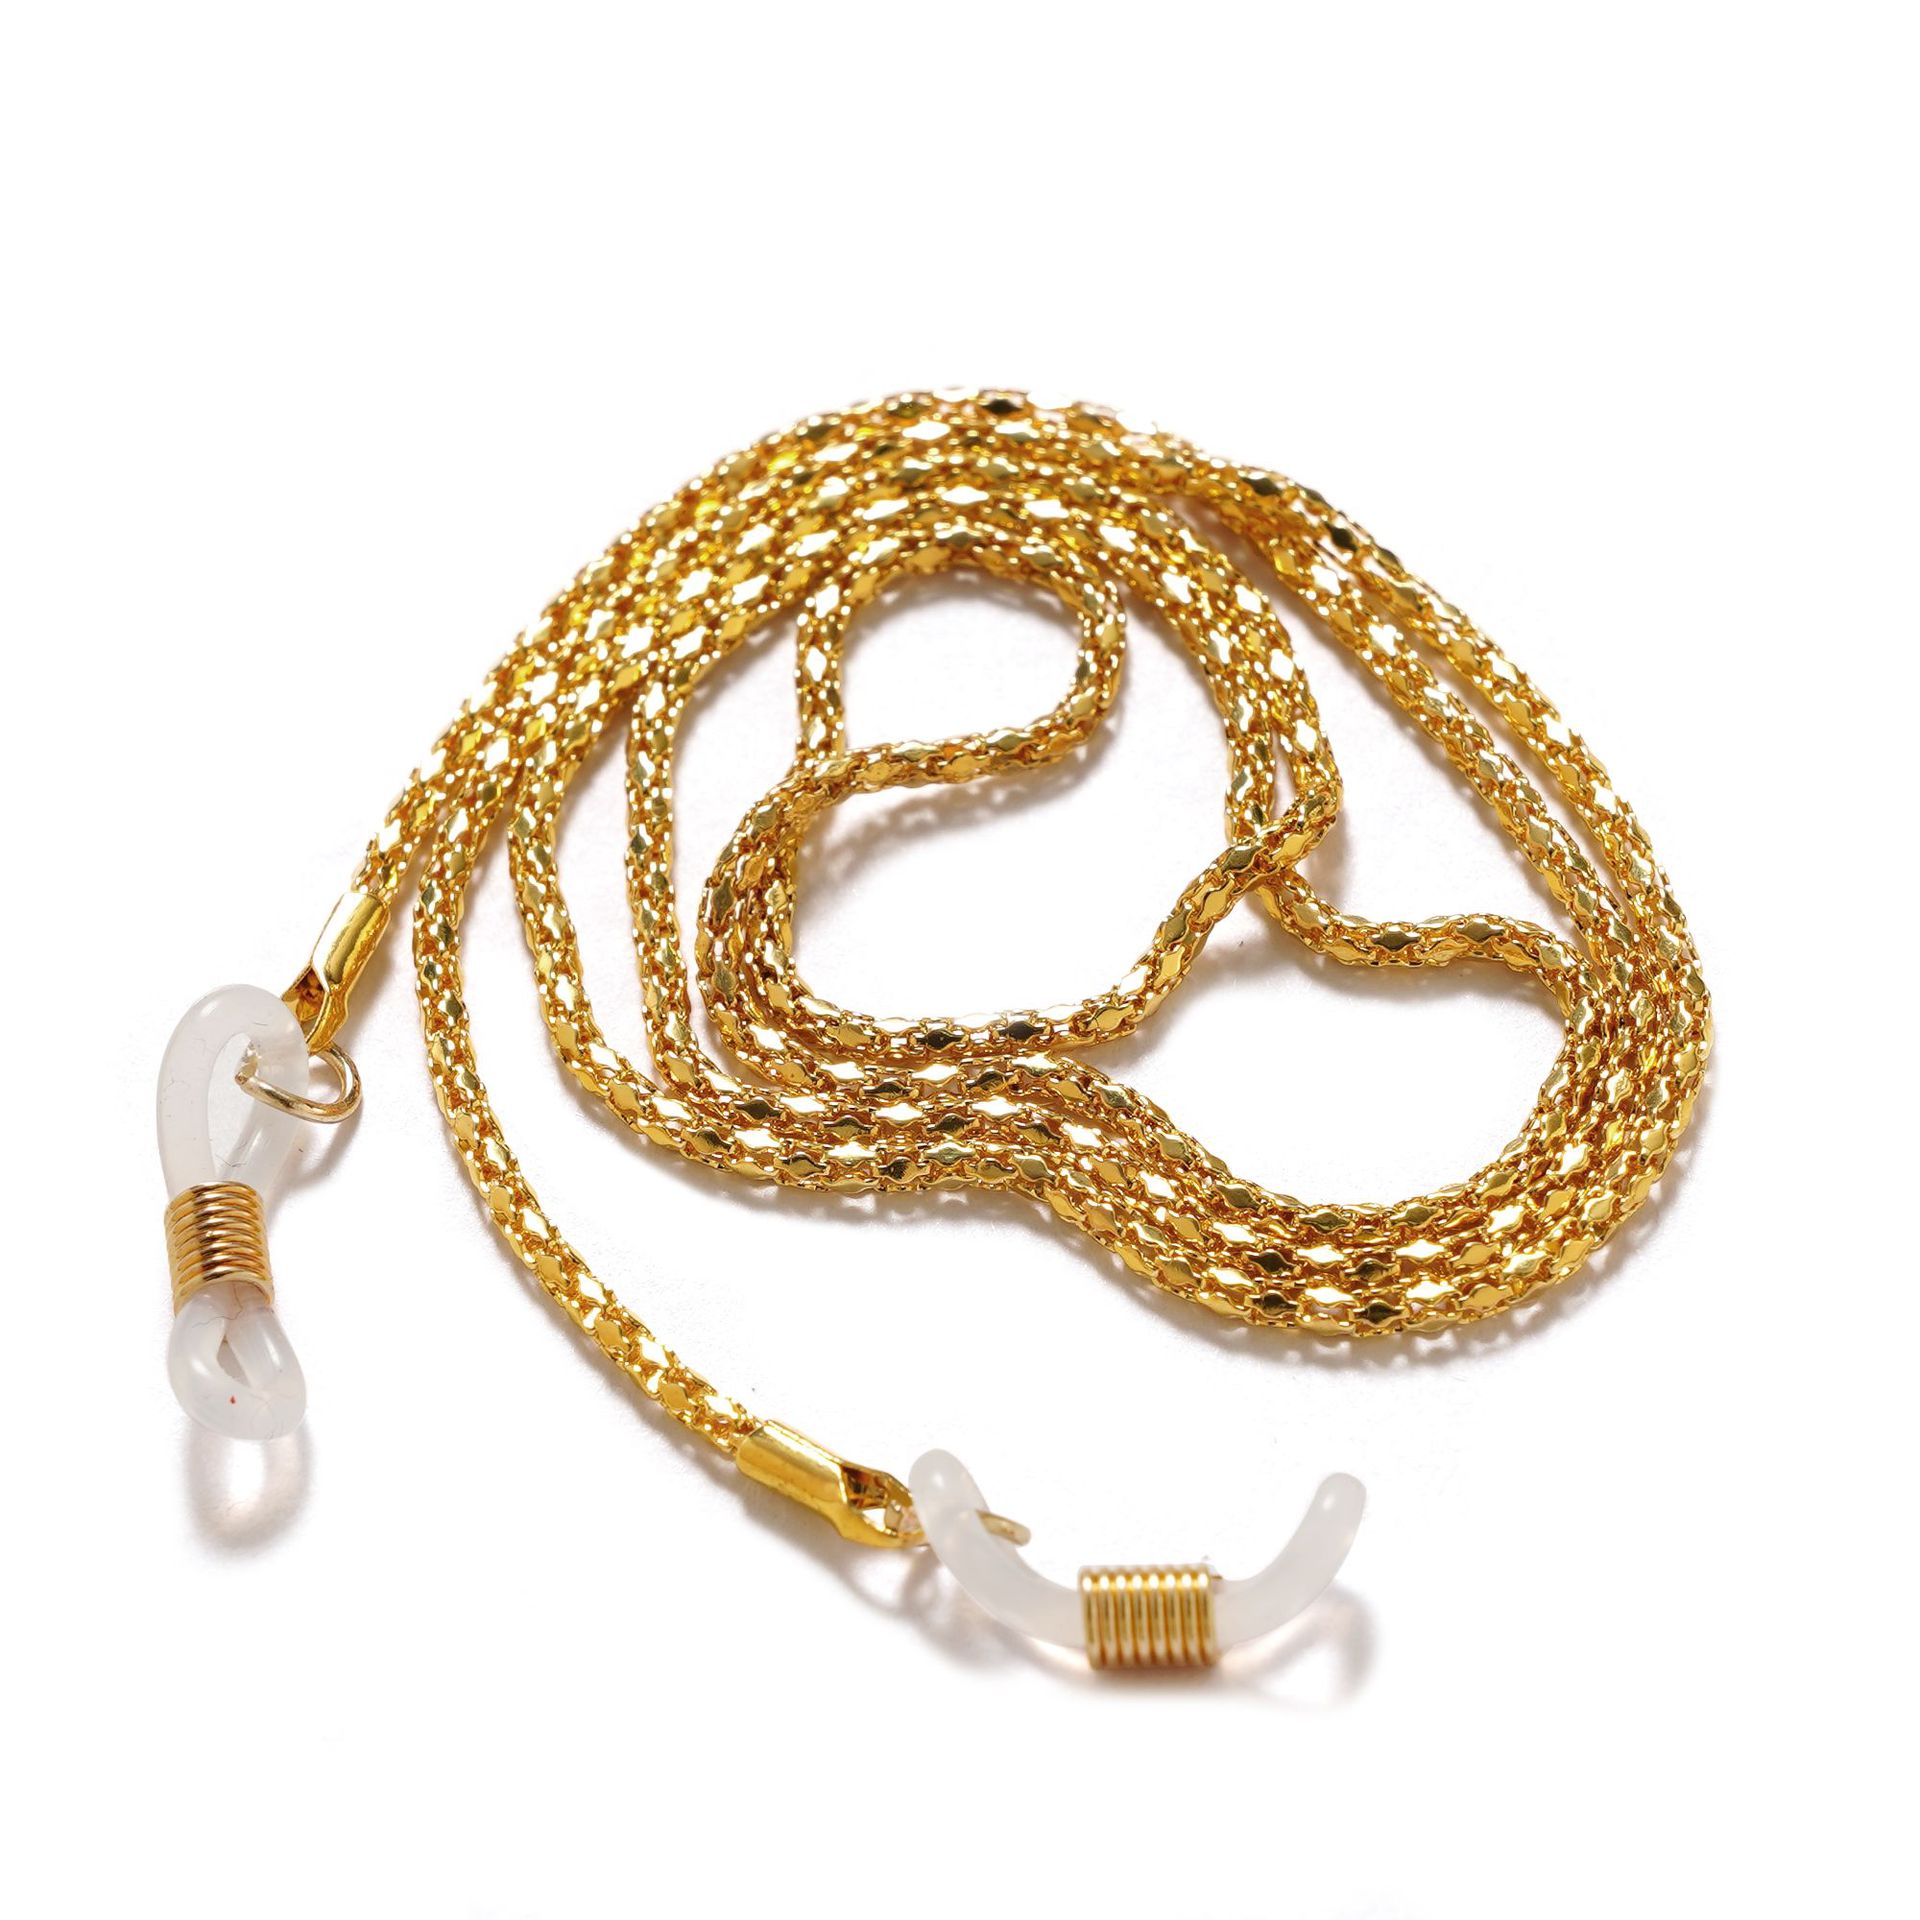 6:Golden -Glasses chain